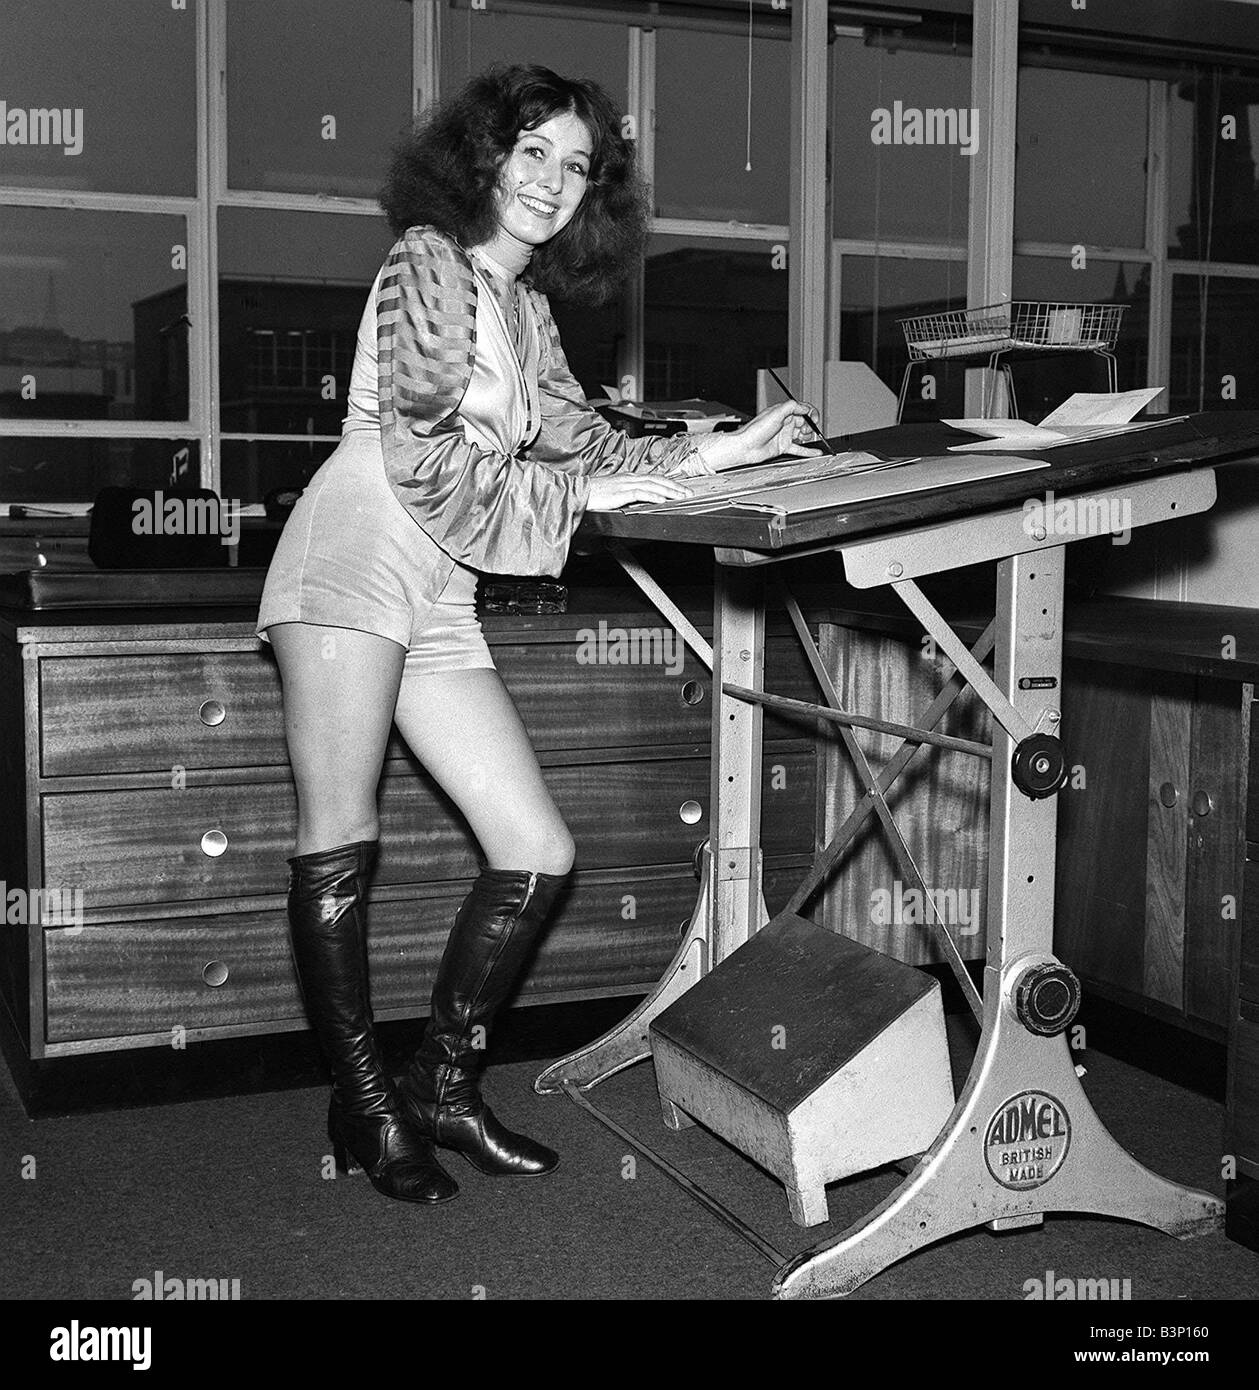 Mode-Shorts 70er Jahre 1970 s Designer und Künstler arbeiten im Bahnhof  tragen Hotpants und kniehohe Stiefel Stockfotografie - Alamy